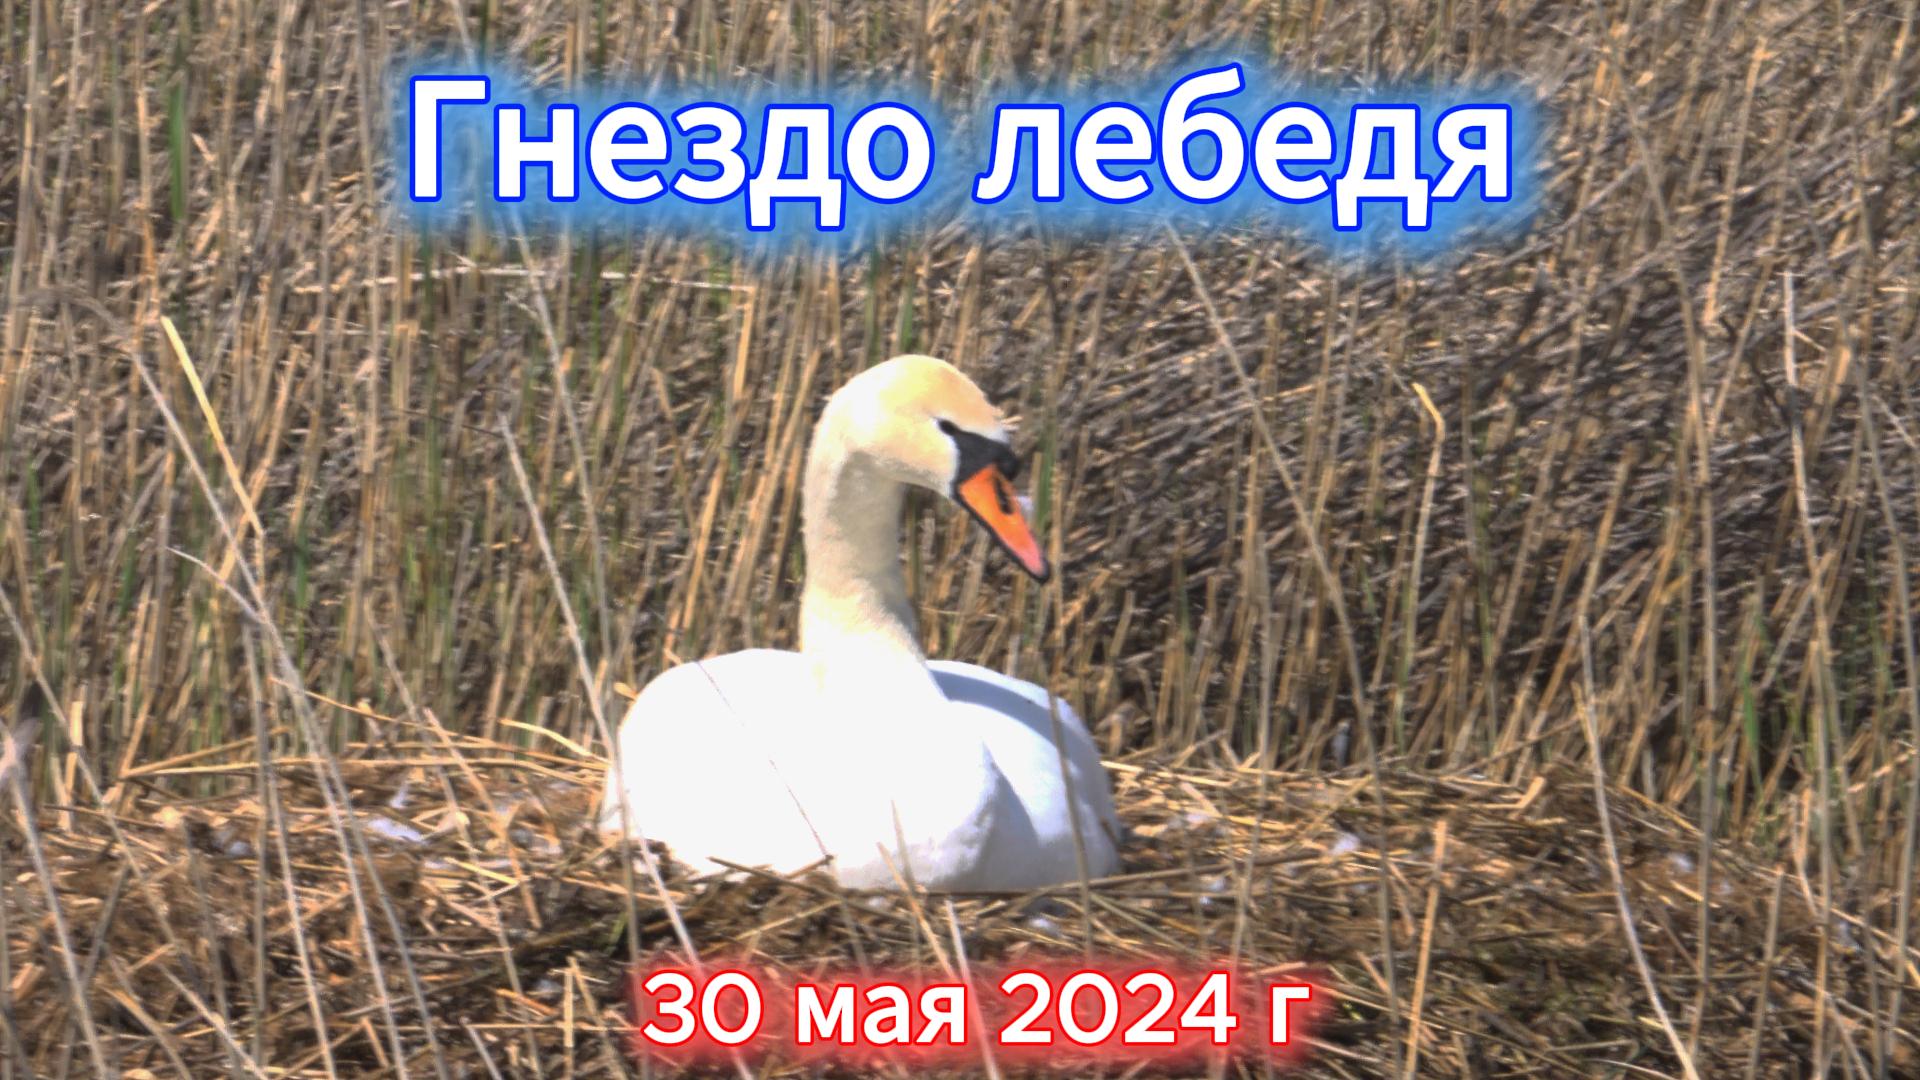 Лебедь в гнезде у дороги 30 мая 2024 г